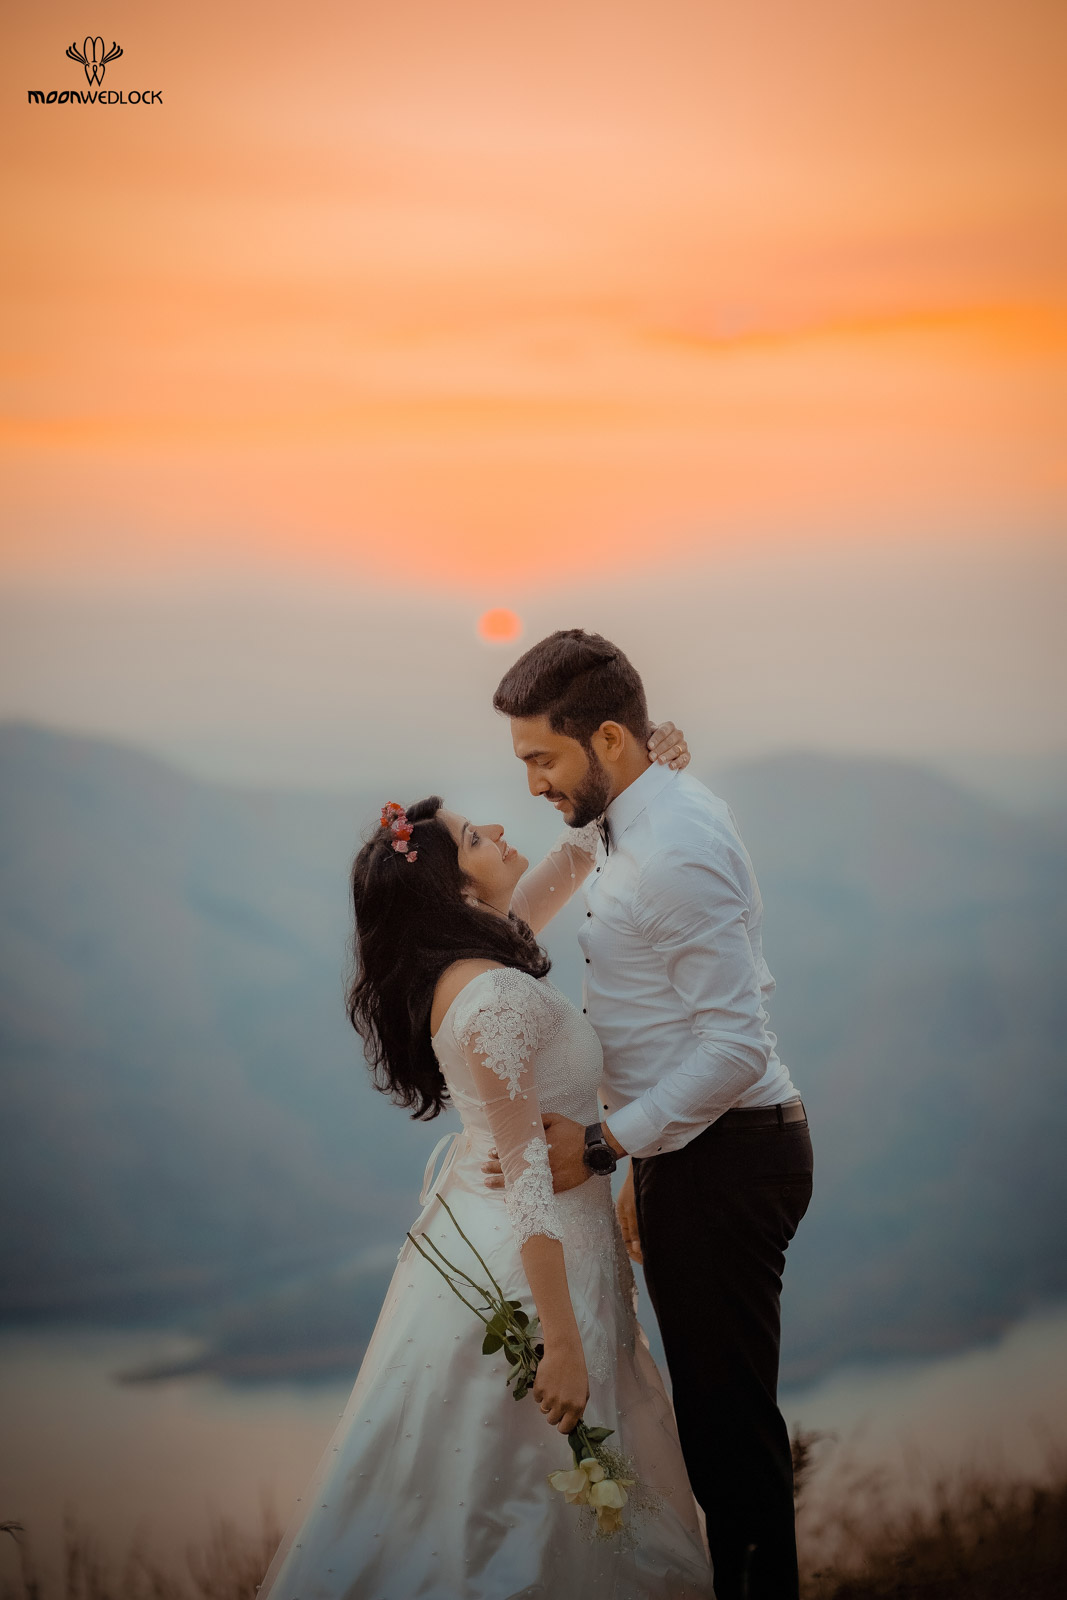 wedding-photographers-in-bangalore-moonwedlock (23)